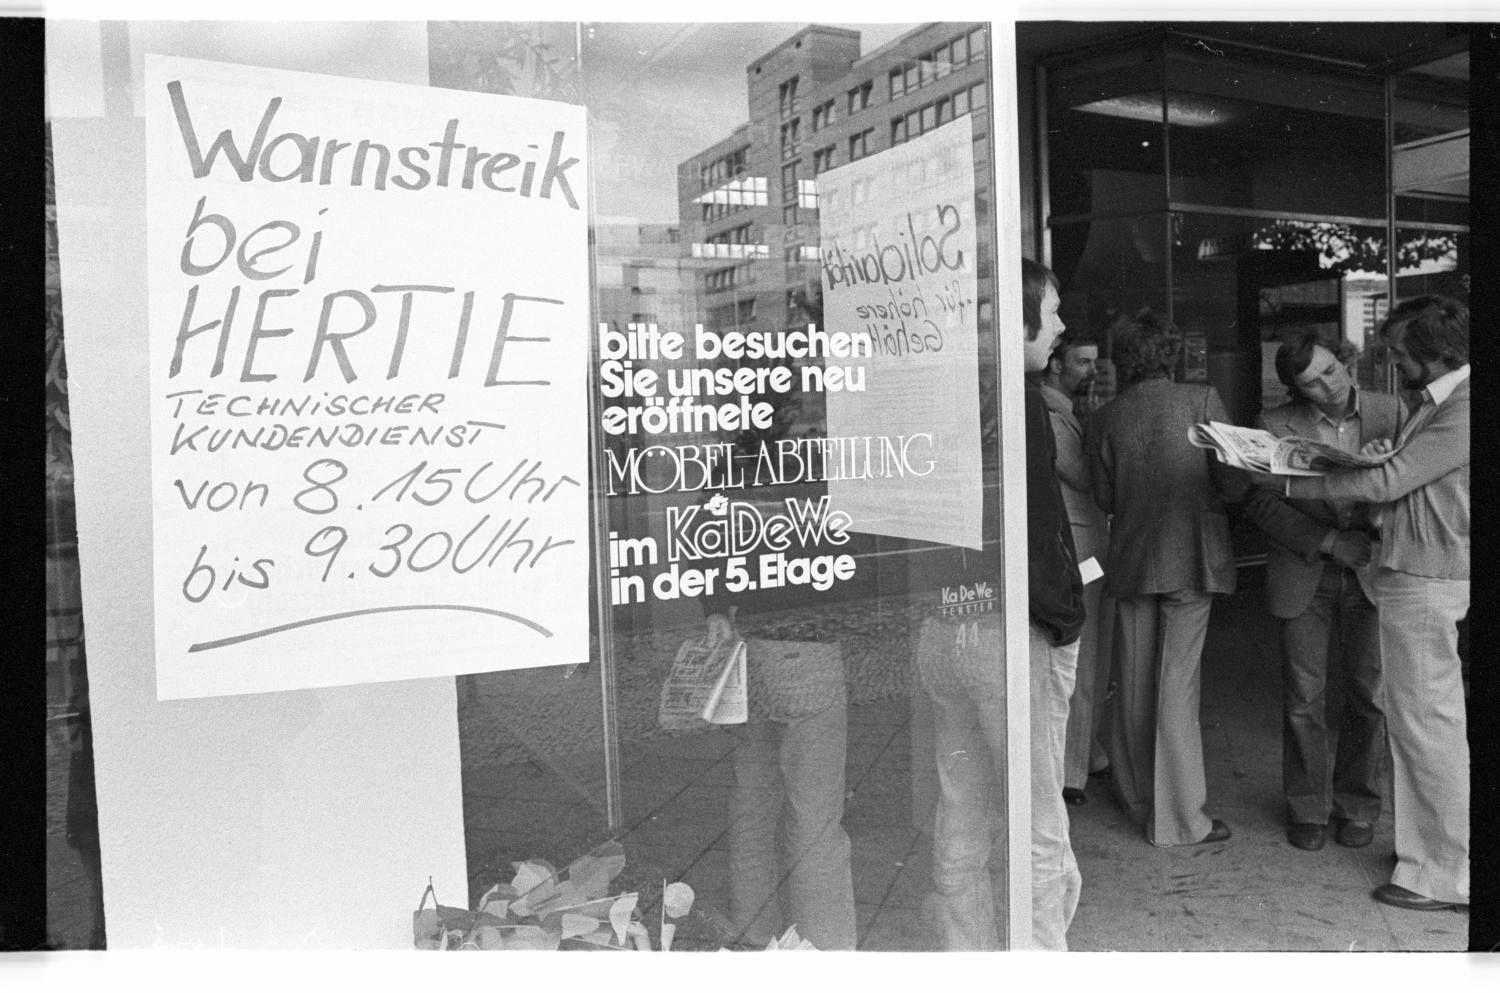 Kleinbildnegative: Warnstreik bei Hertie und Wittenbergplatz, 1978 (Museen Tempelhof-Schöneberg/Jürgen Henschel RR-F)